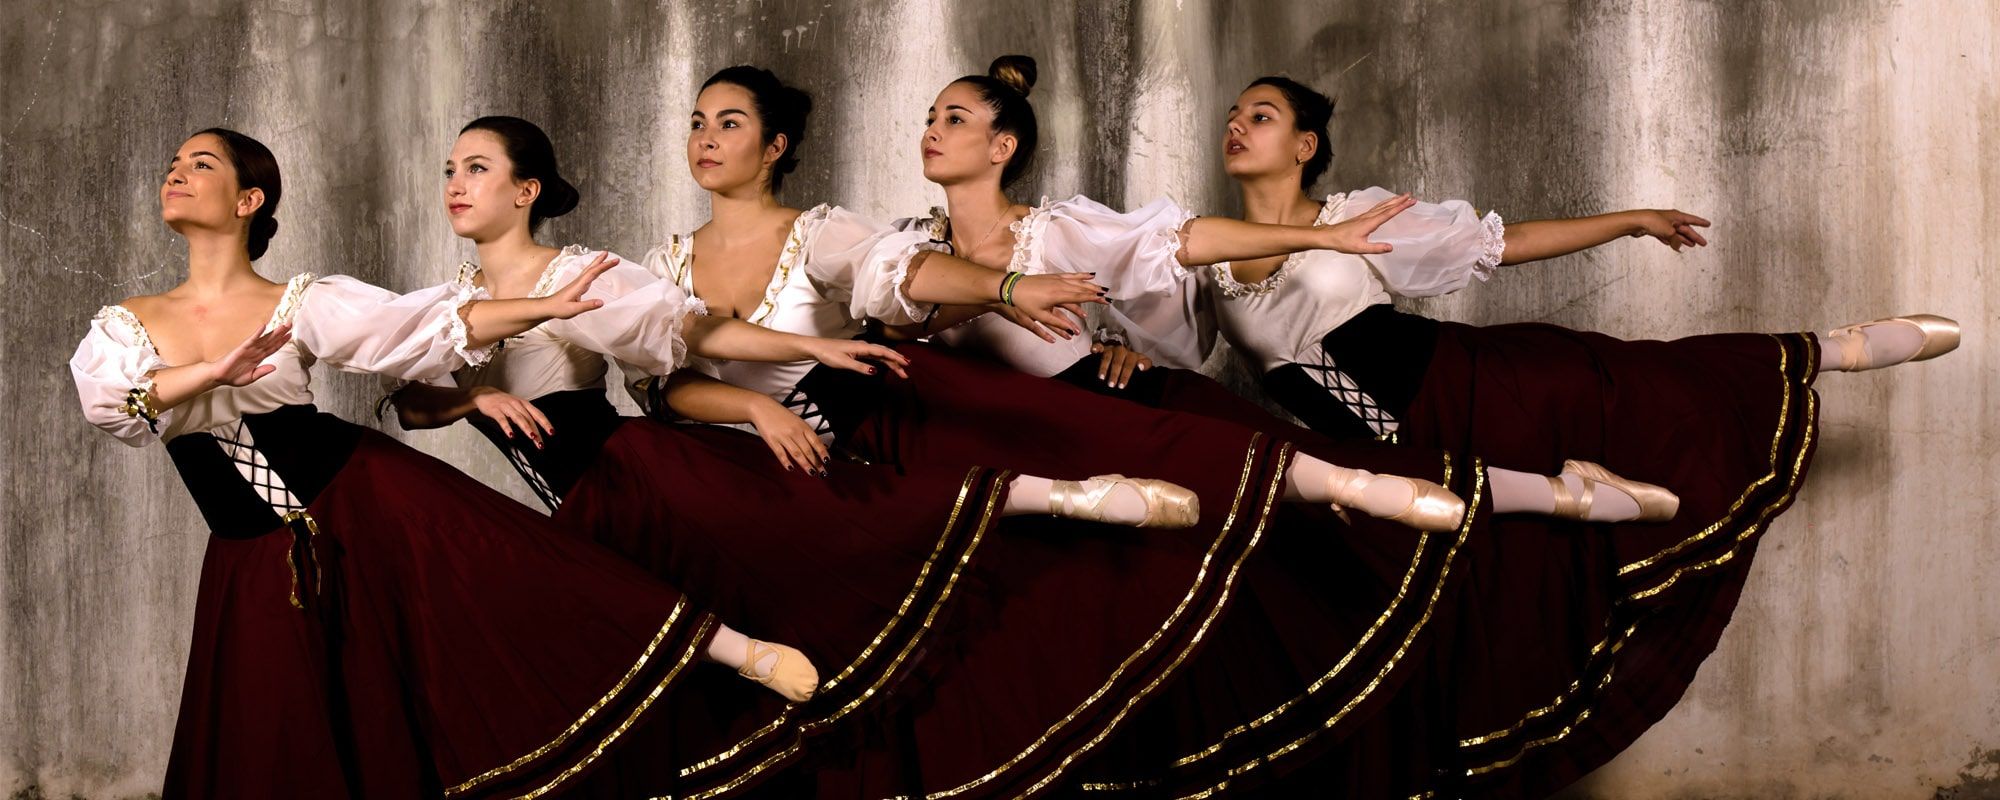 Είδη χορού που διδάσκονται στη σχολή μπαλέτου MS Ballet school στη Λάρισα